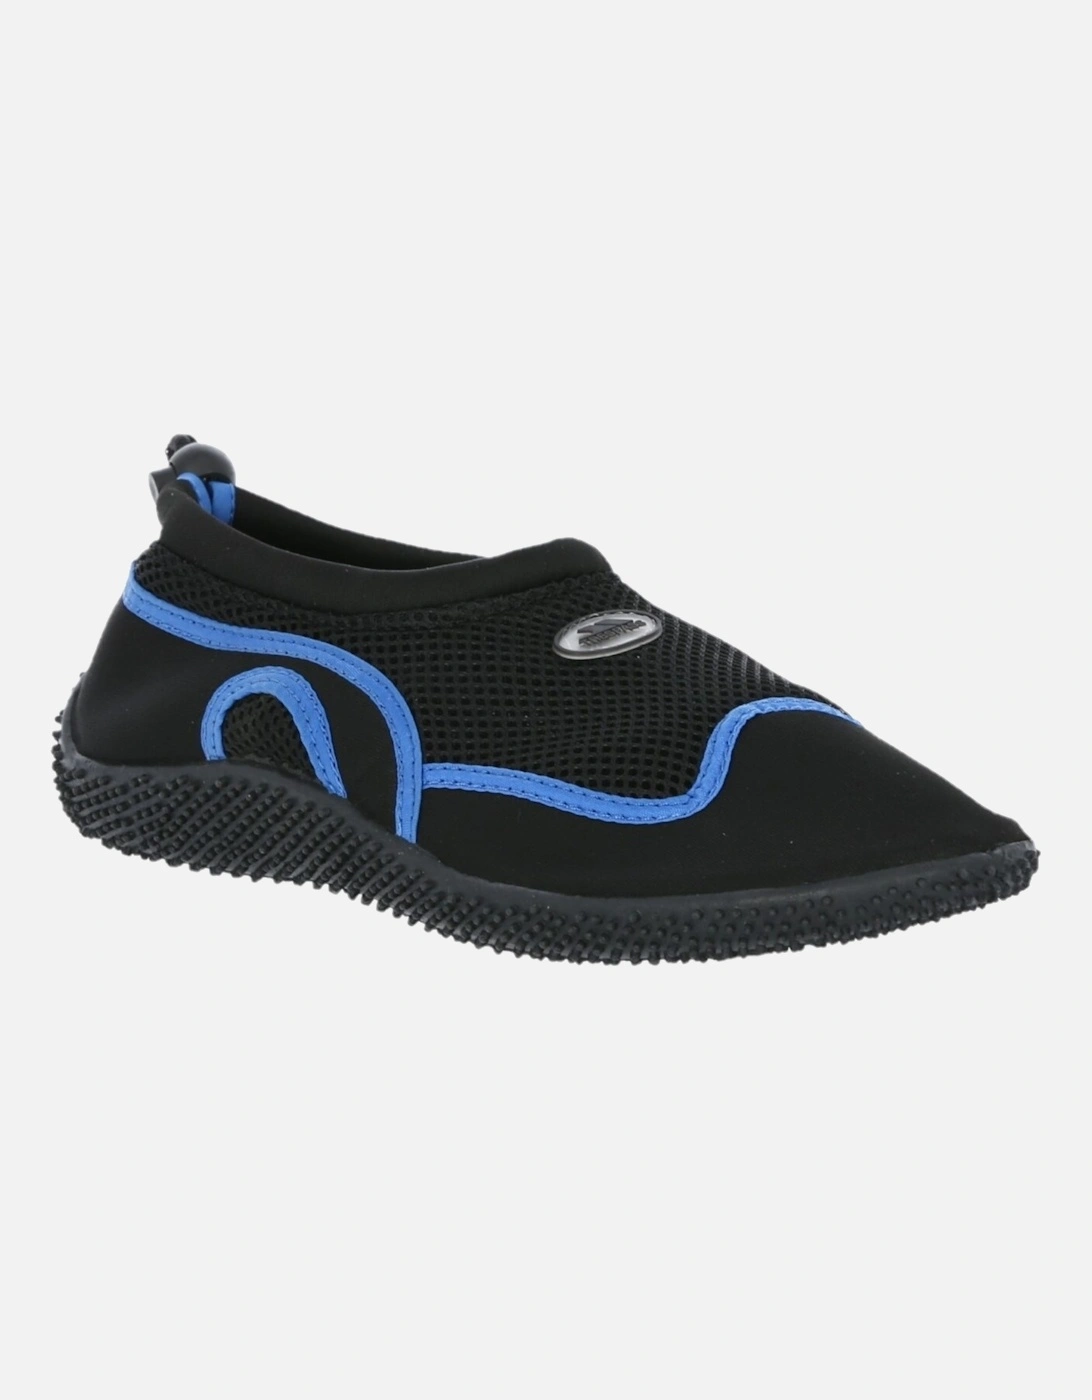 Adults Unisex Paddle Aqua Swimming Shoe, 6 of 5